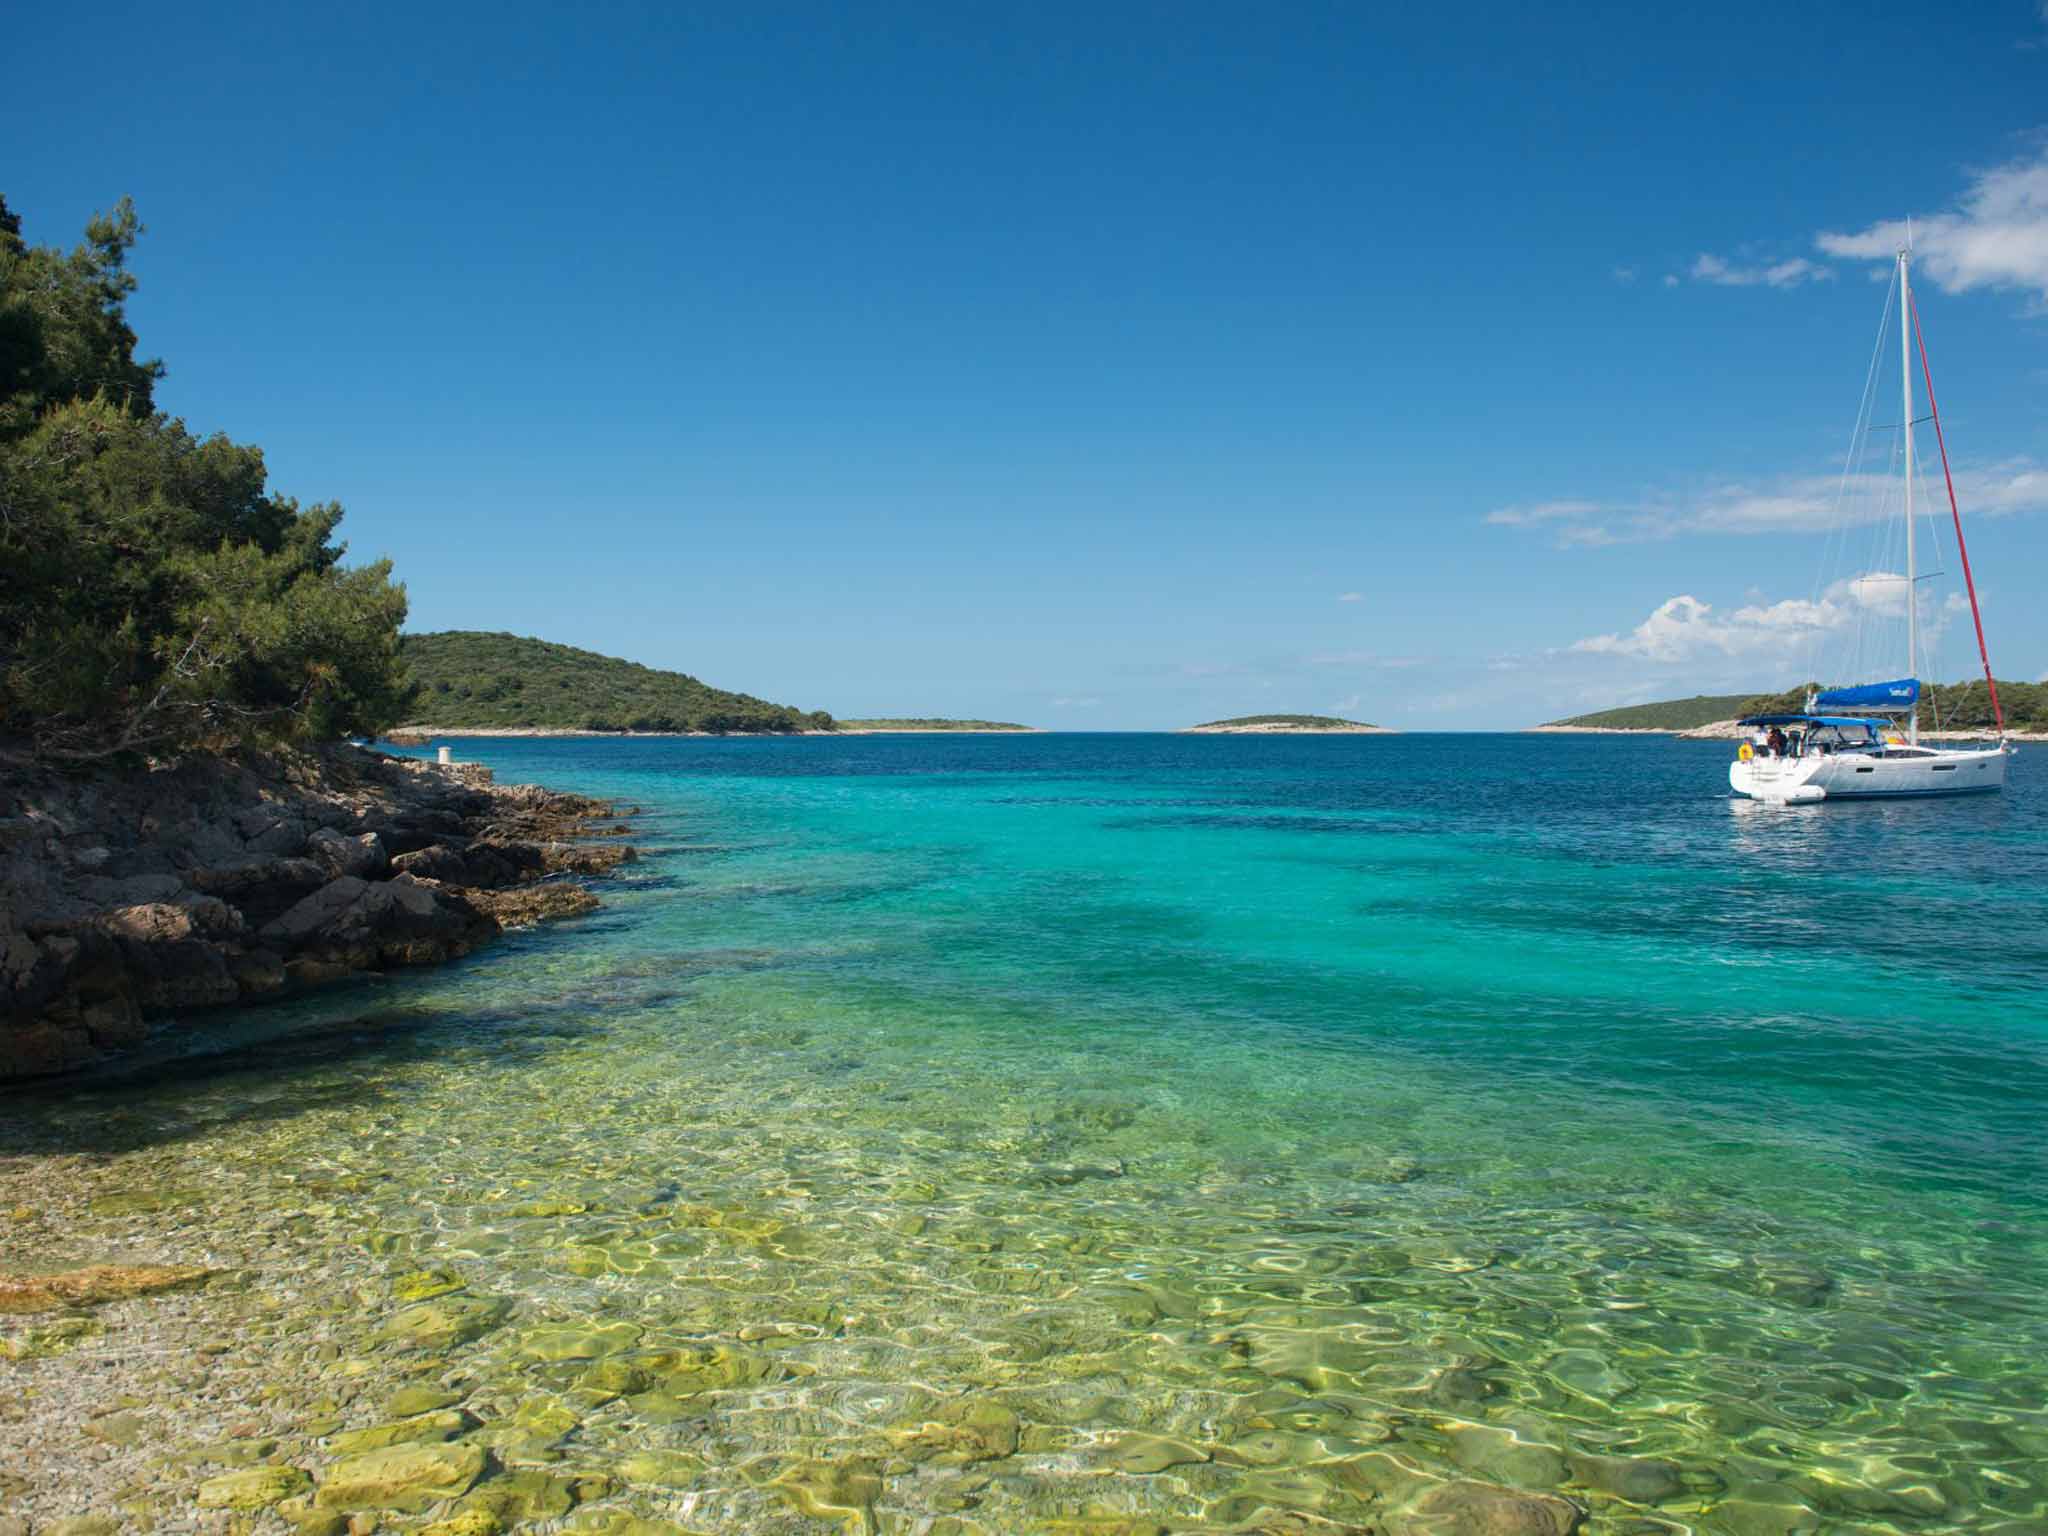 Croatia's coast is ideal for sailing